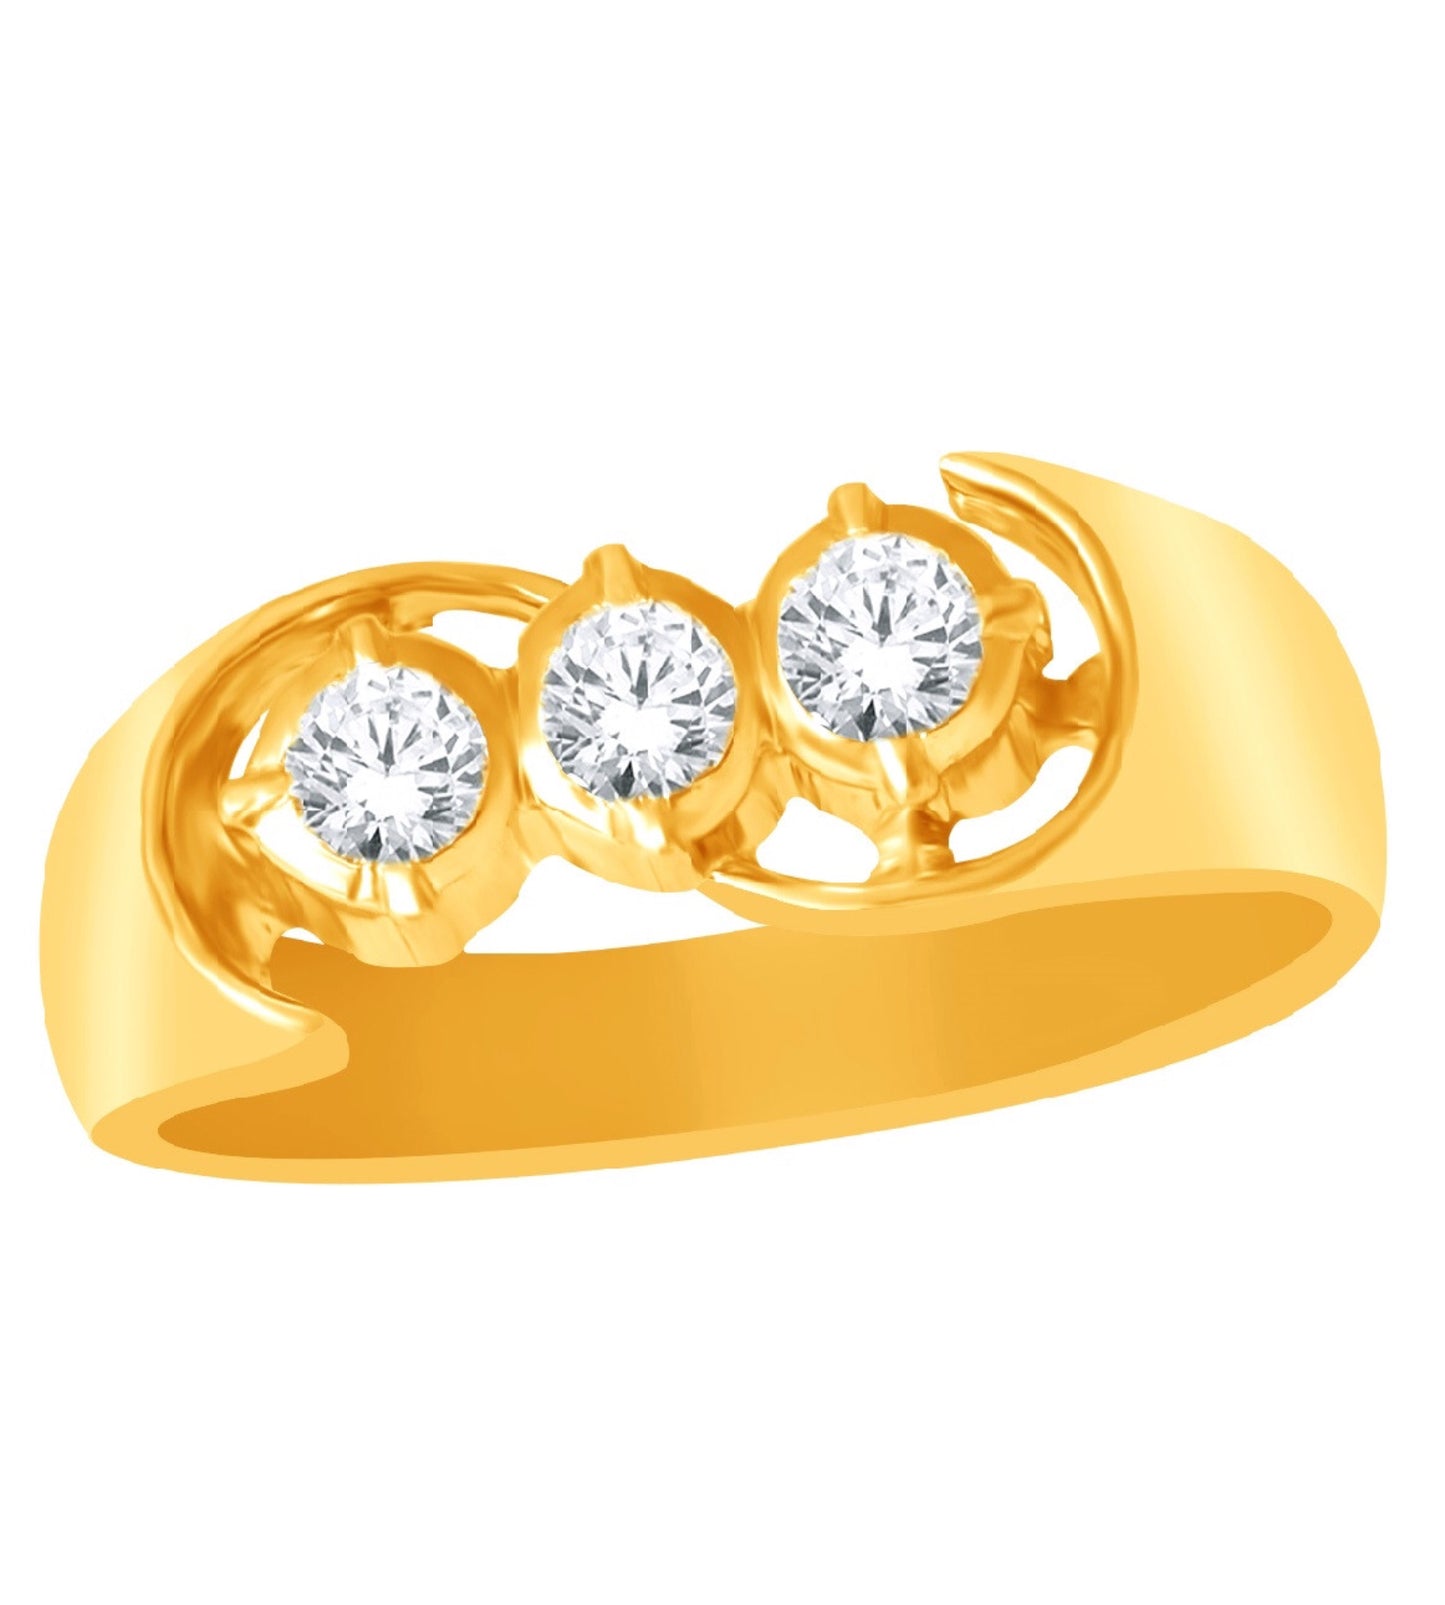 Diamond studded Gold Ring for Men